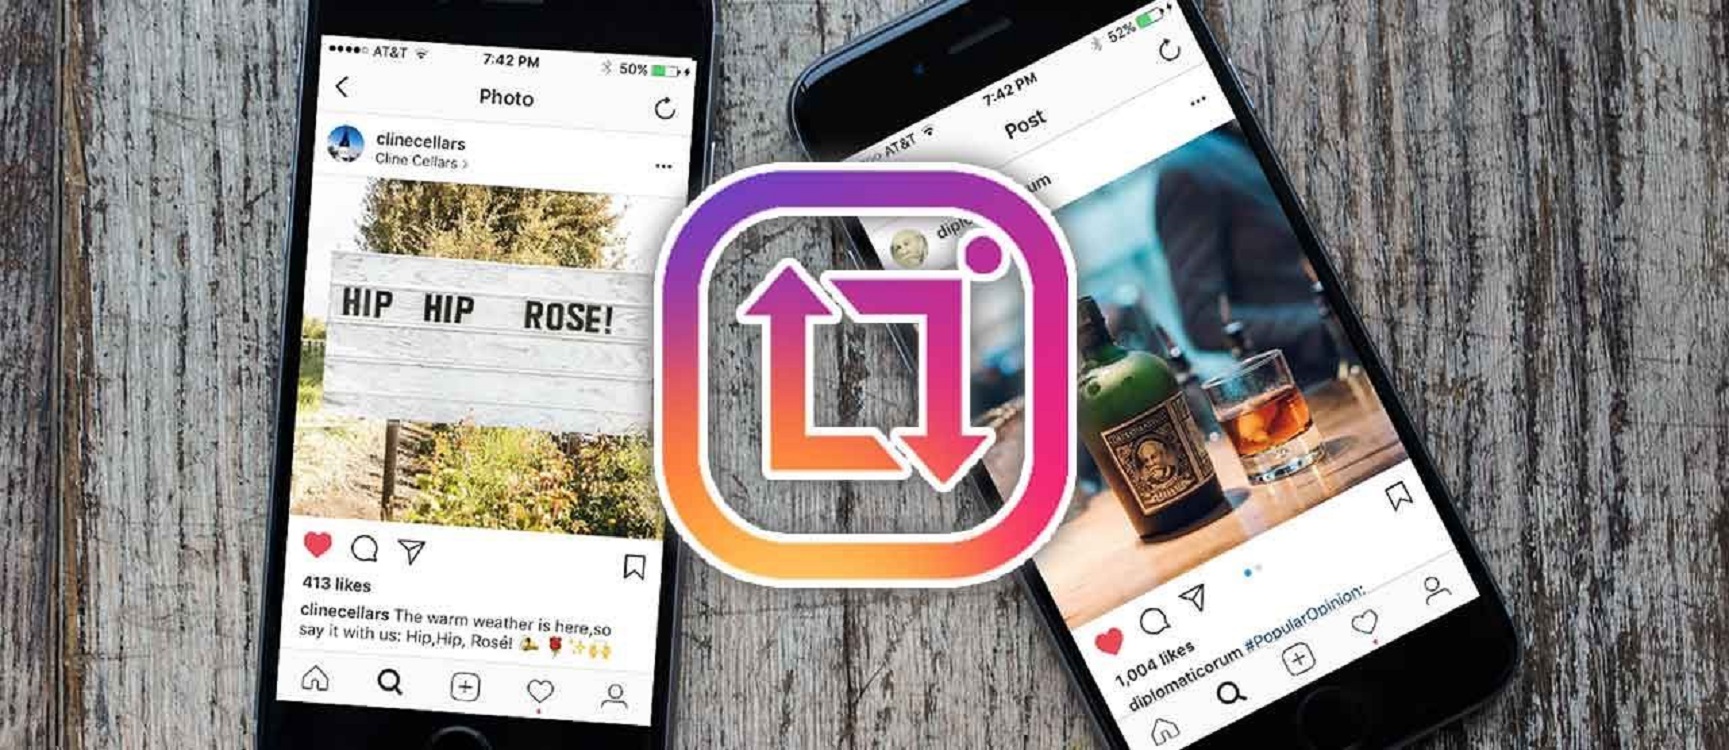 Cara Mudah Mengatasi Instagram Tidak Bisa Share ke Facebook